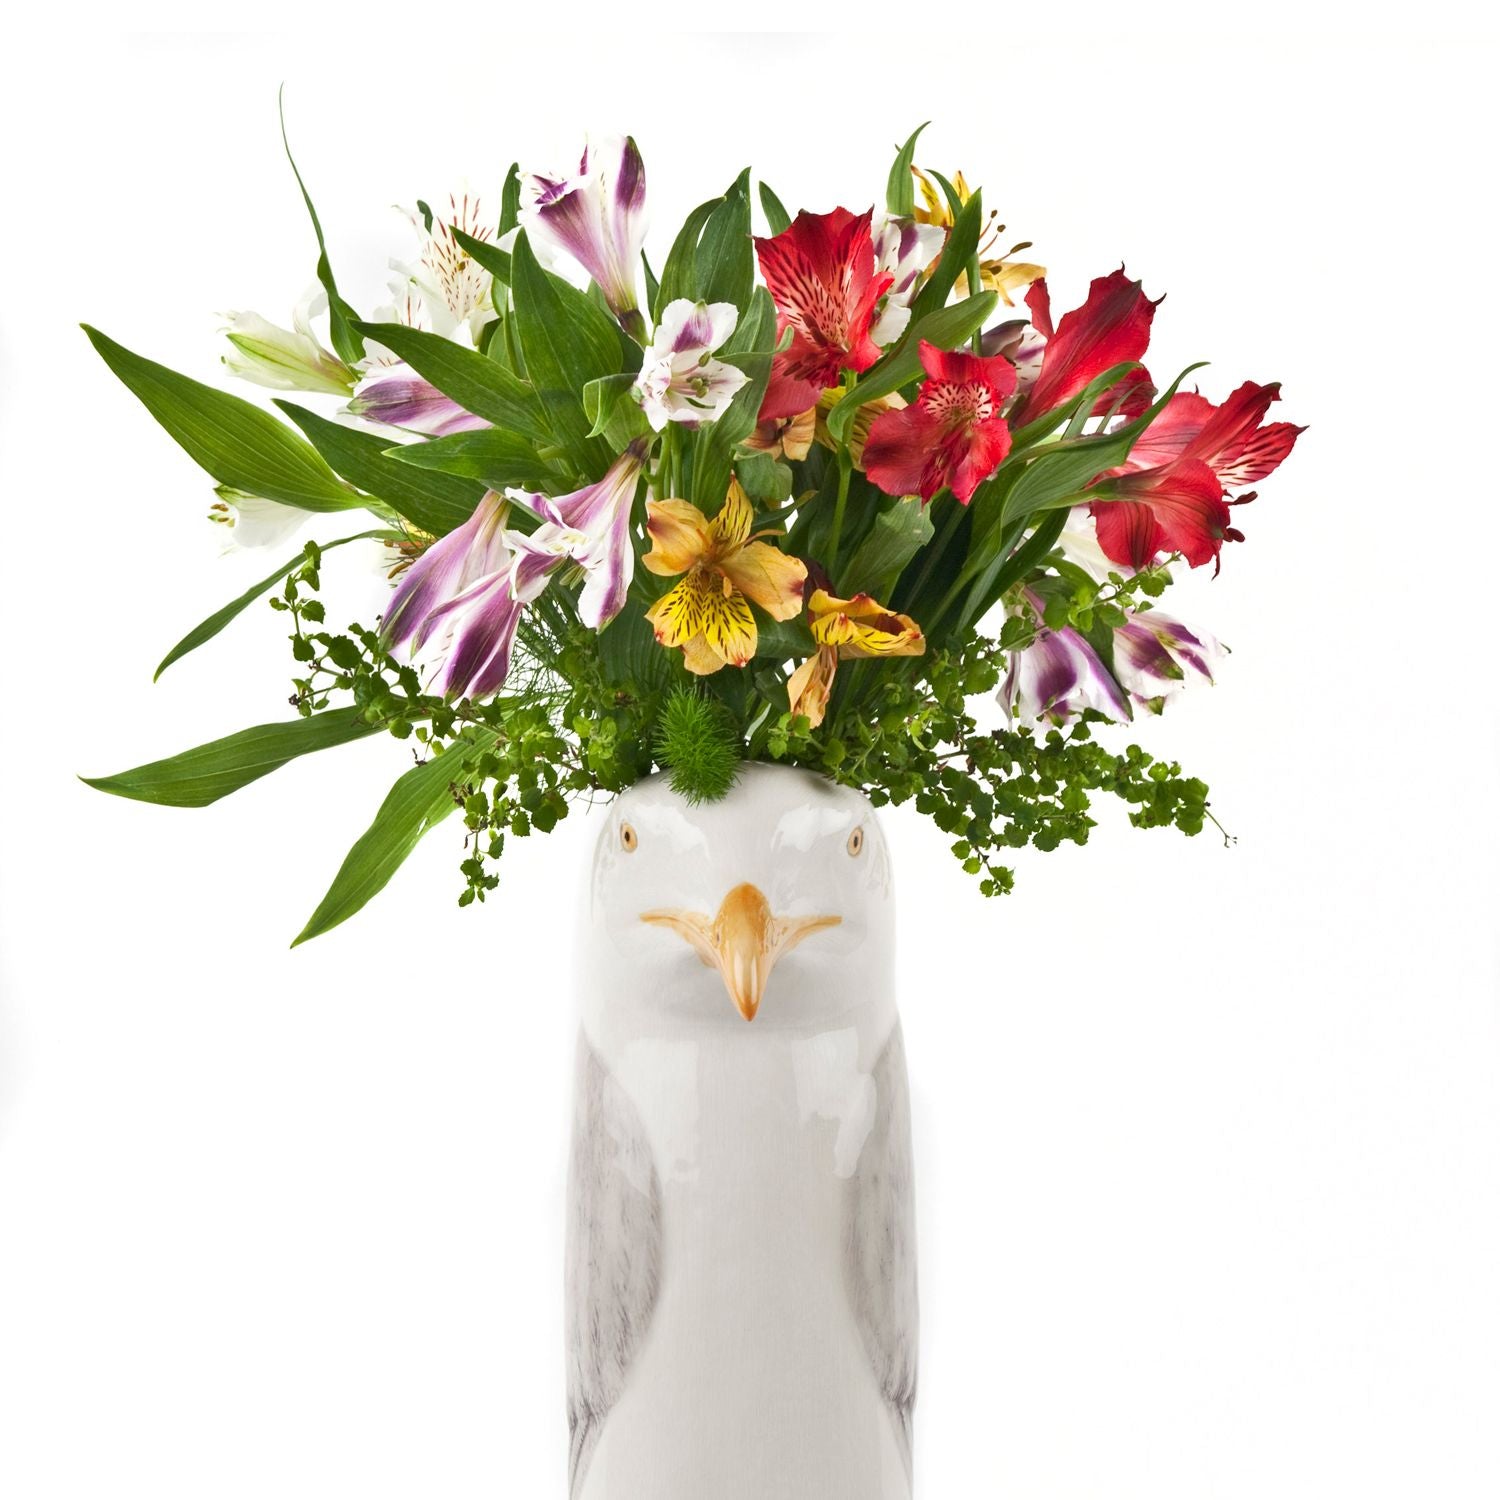 Seagull Flower Vase - Large